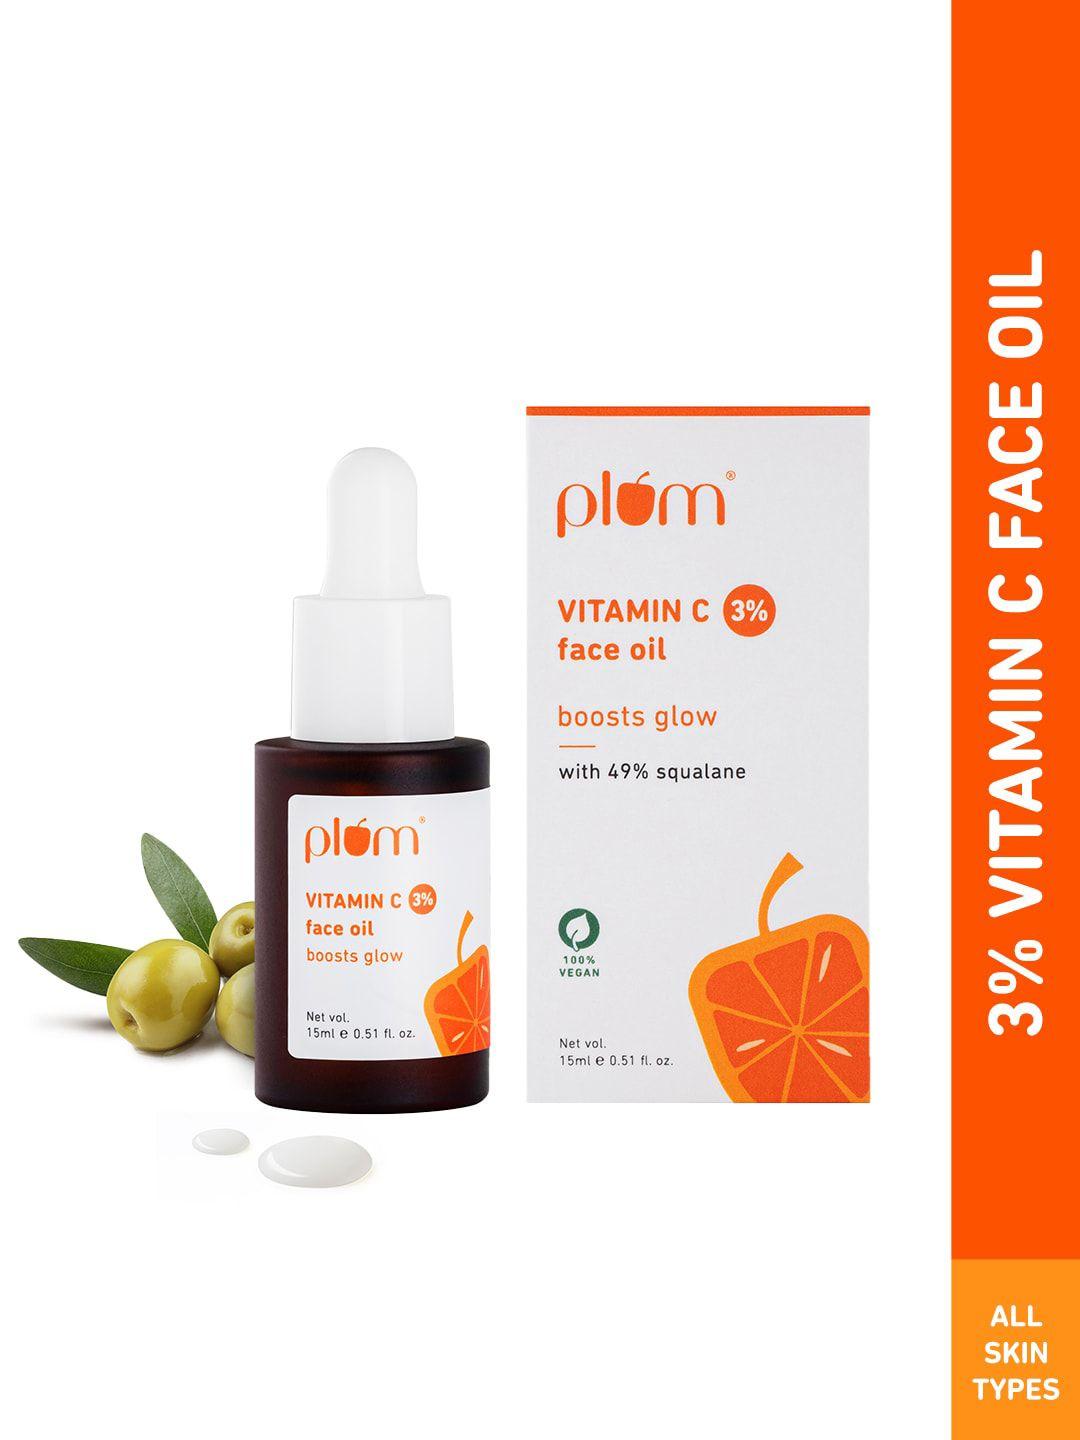 plum 3% vitamin c face oil 15ml